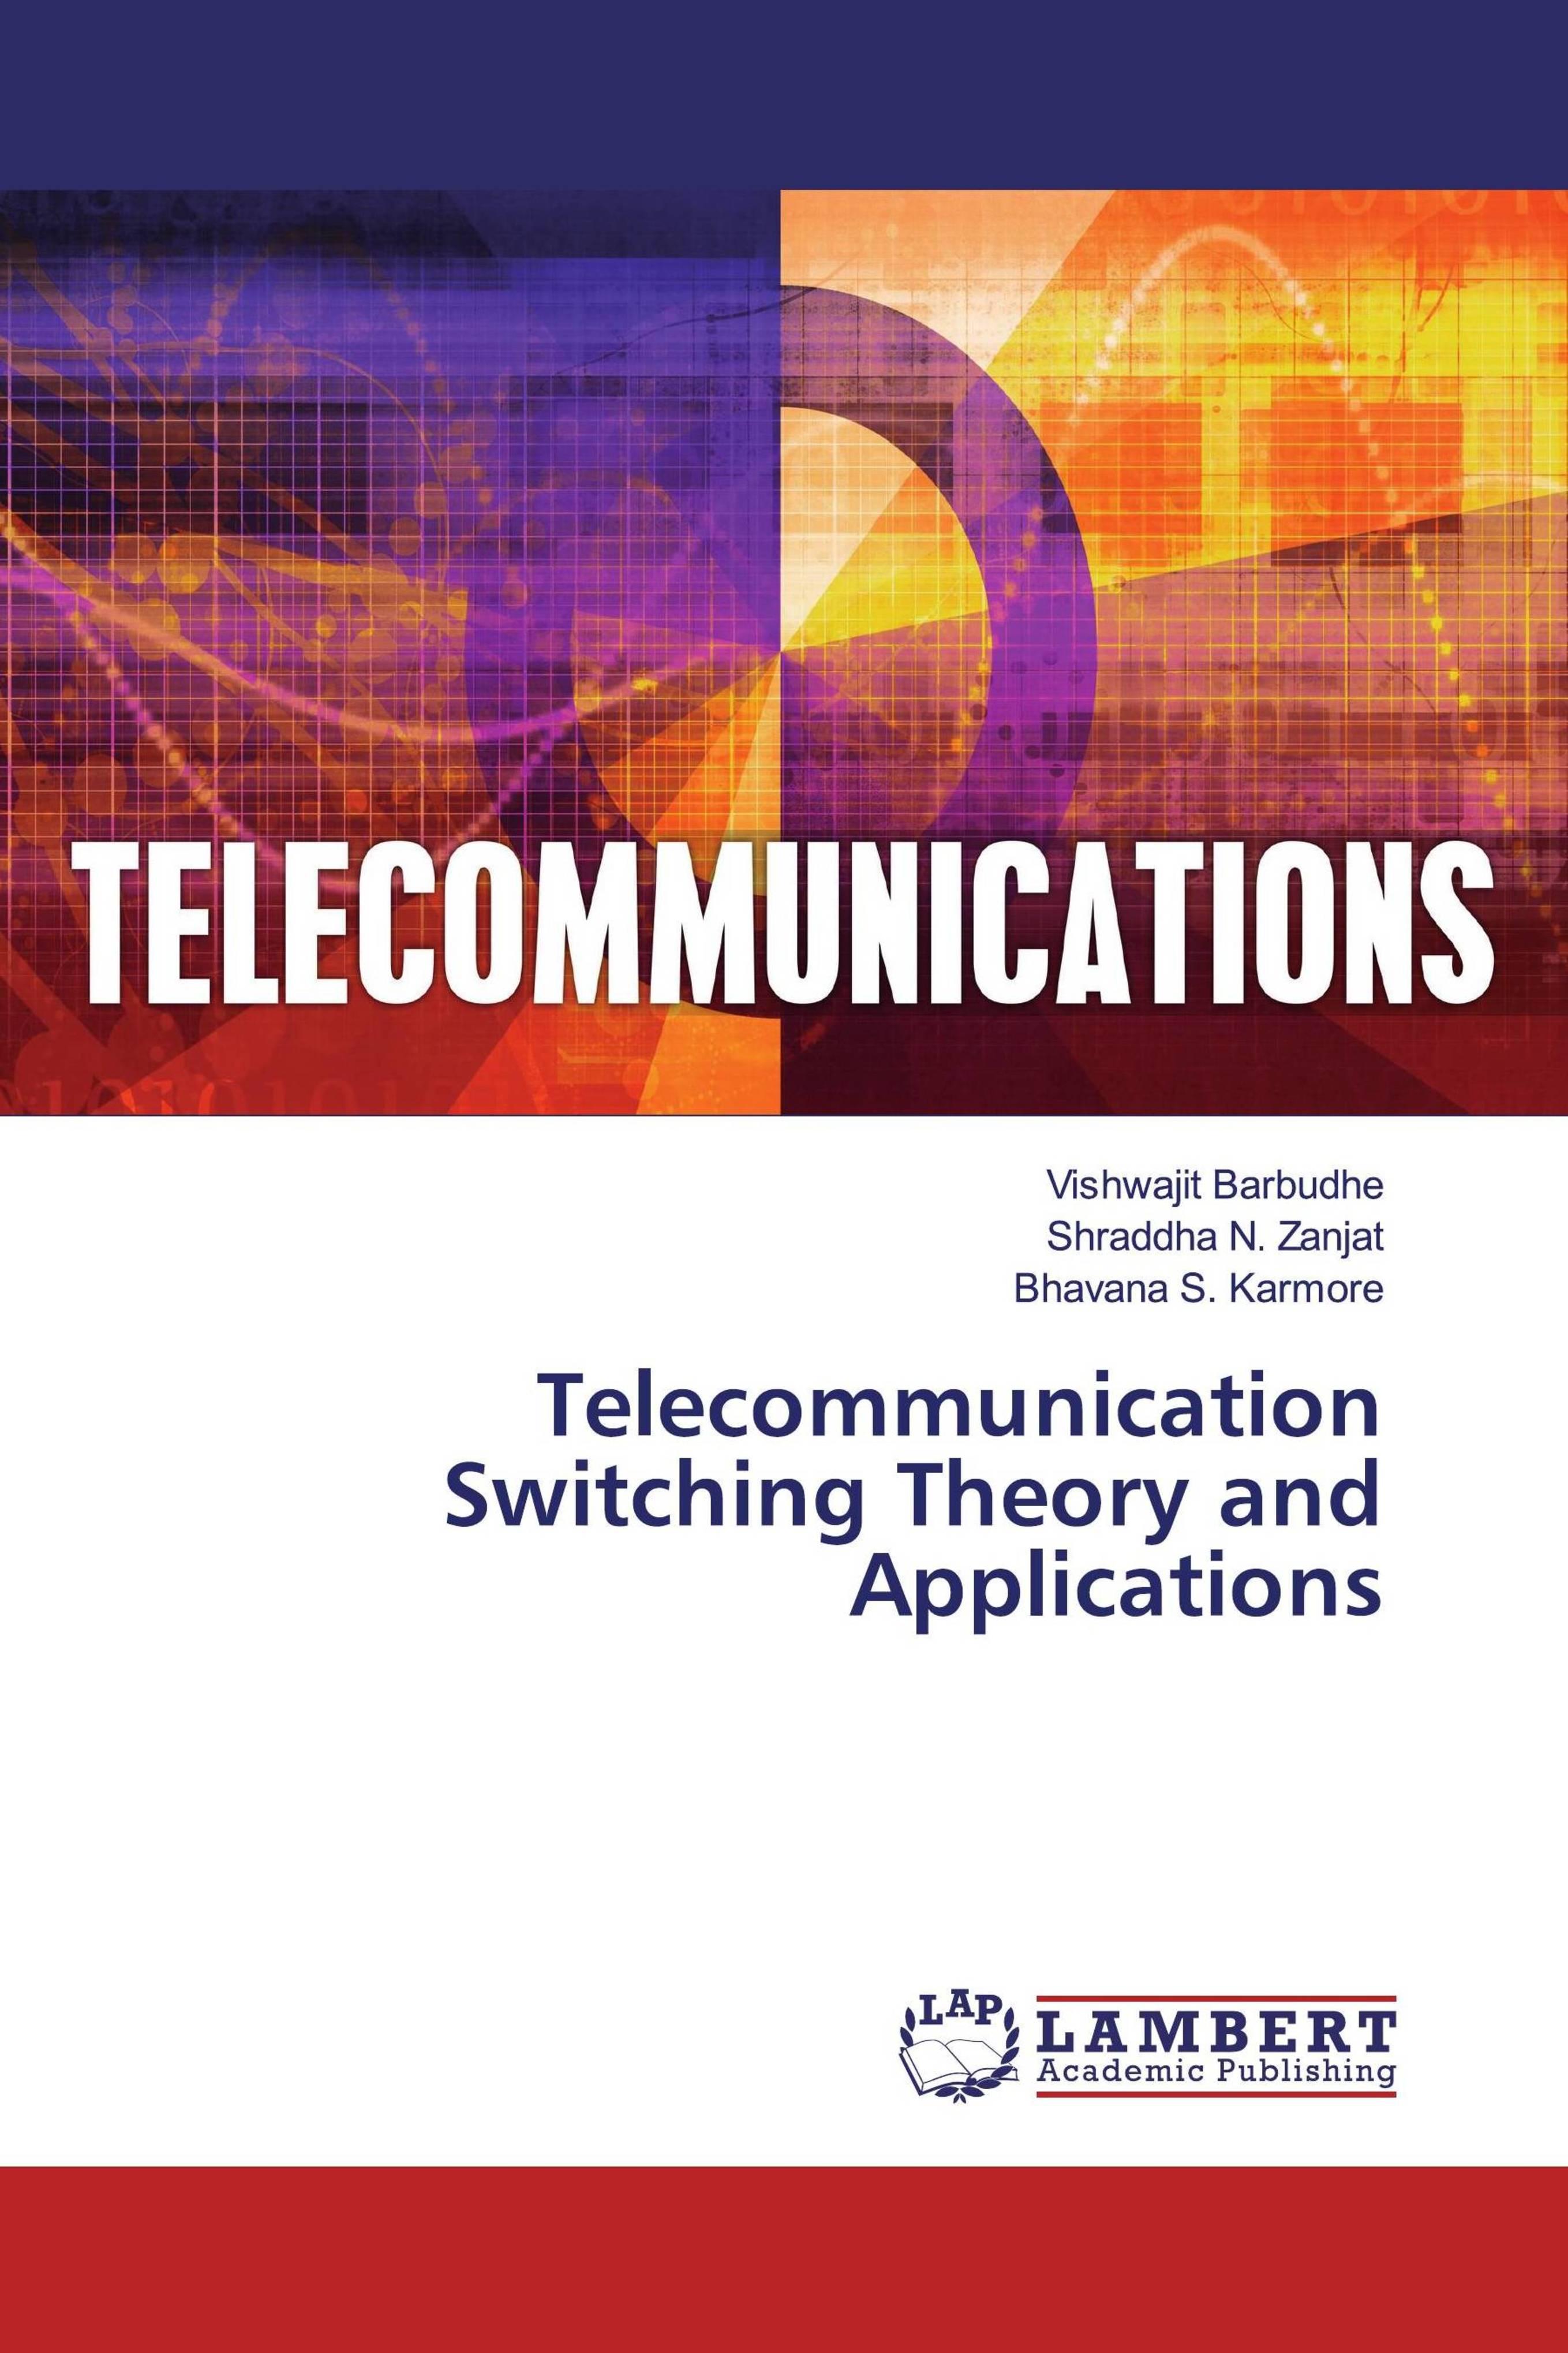 [telecommunication]Telecommunications engineering